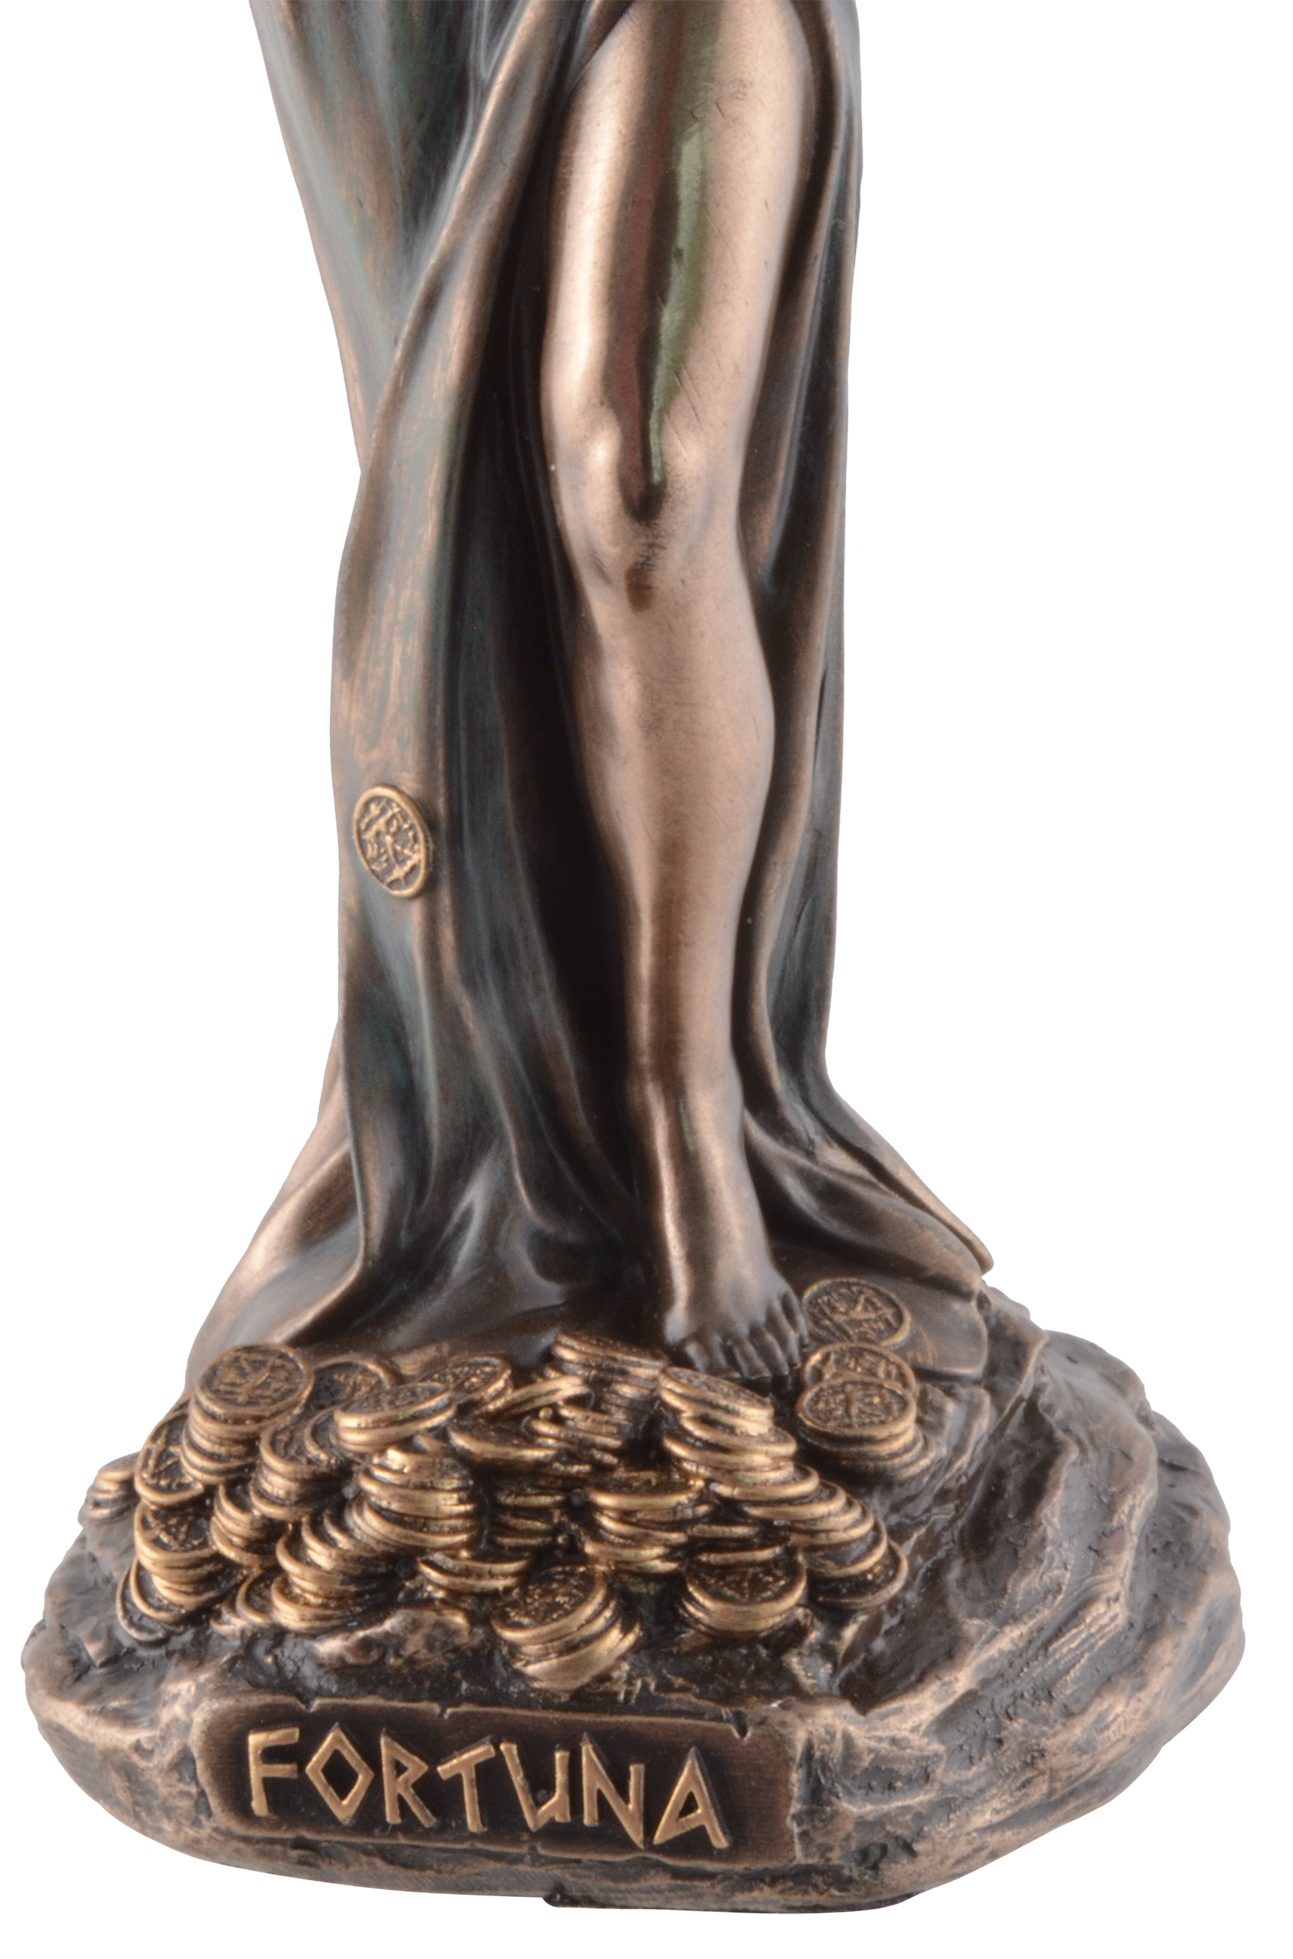 6x6x16 Römische Göttin Vogler Gmbh bronziert, Größe: Fortuna, ca. coloriert, L/B/H direct Veronesedesign, Dekofigur cm